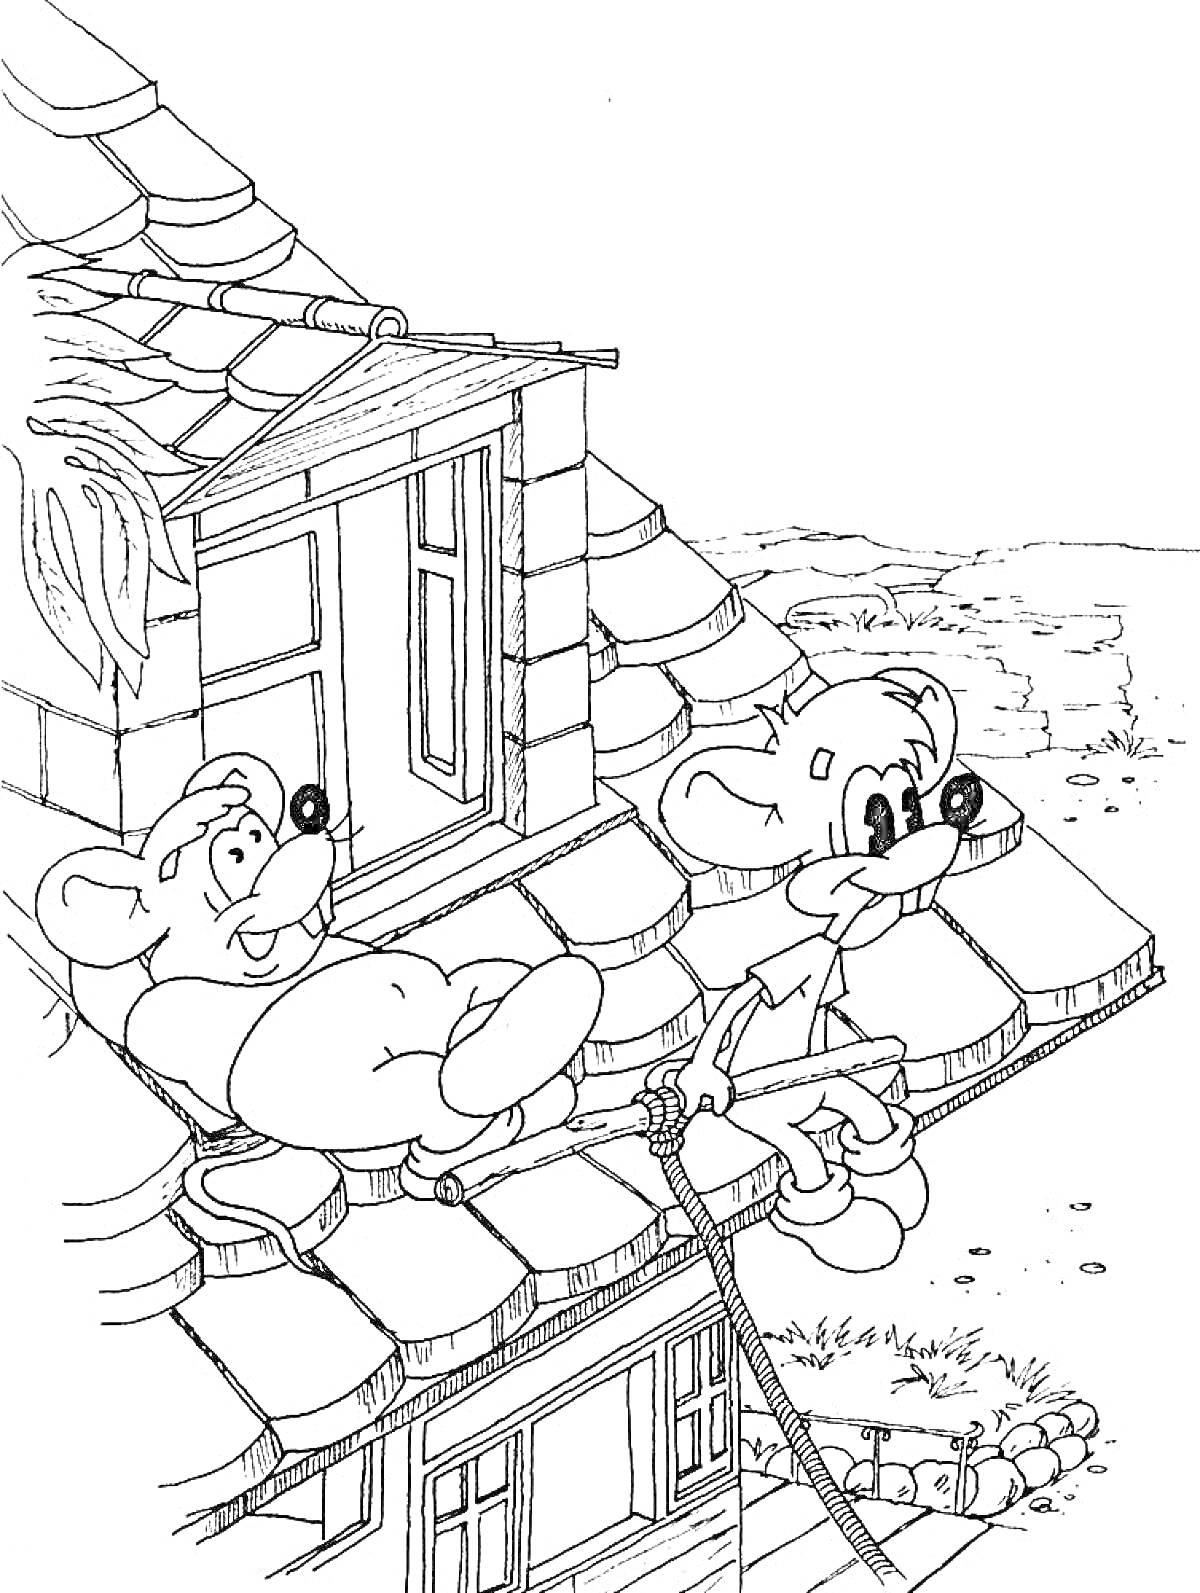 Две мышки на крыше дома с покатой крышей, окно на чердаке, веревка, ведущая вниз